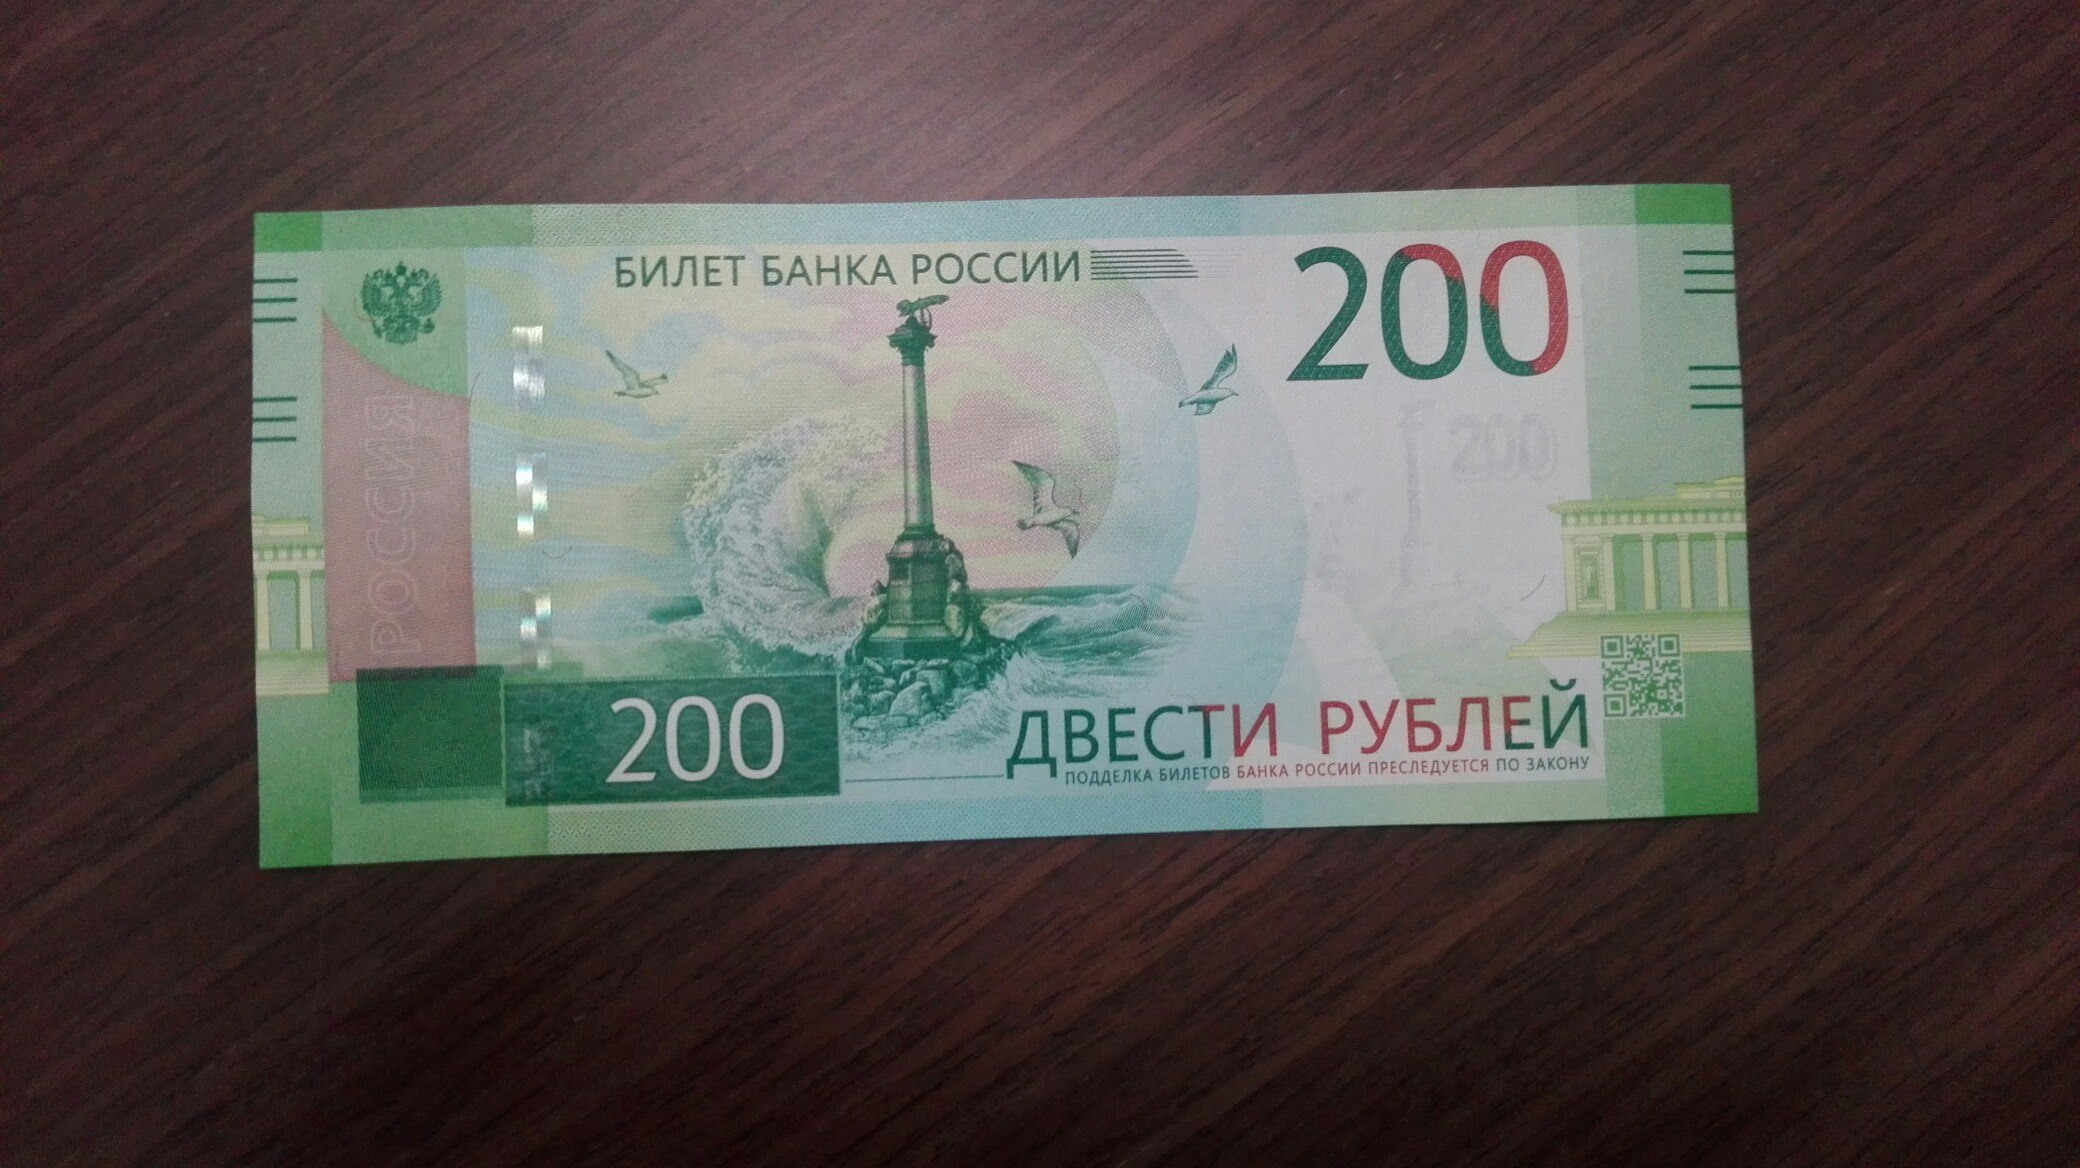 200 рублей словами. 200 Рублей. 200 Рублей банкнота. Новые двести рублей. Российские купюры 200 рублей.